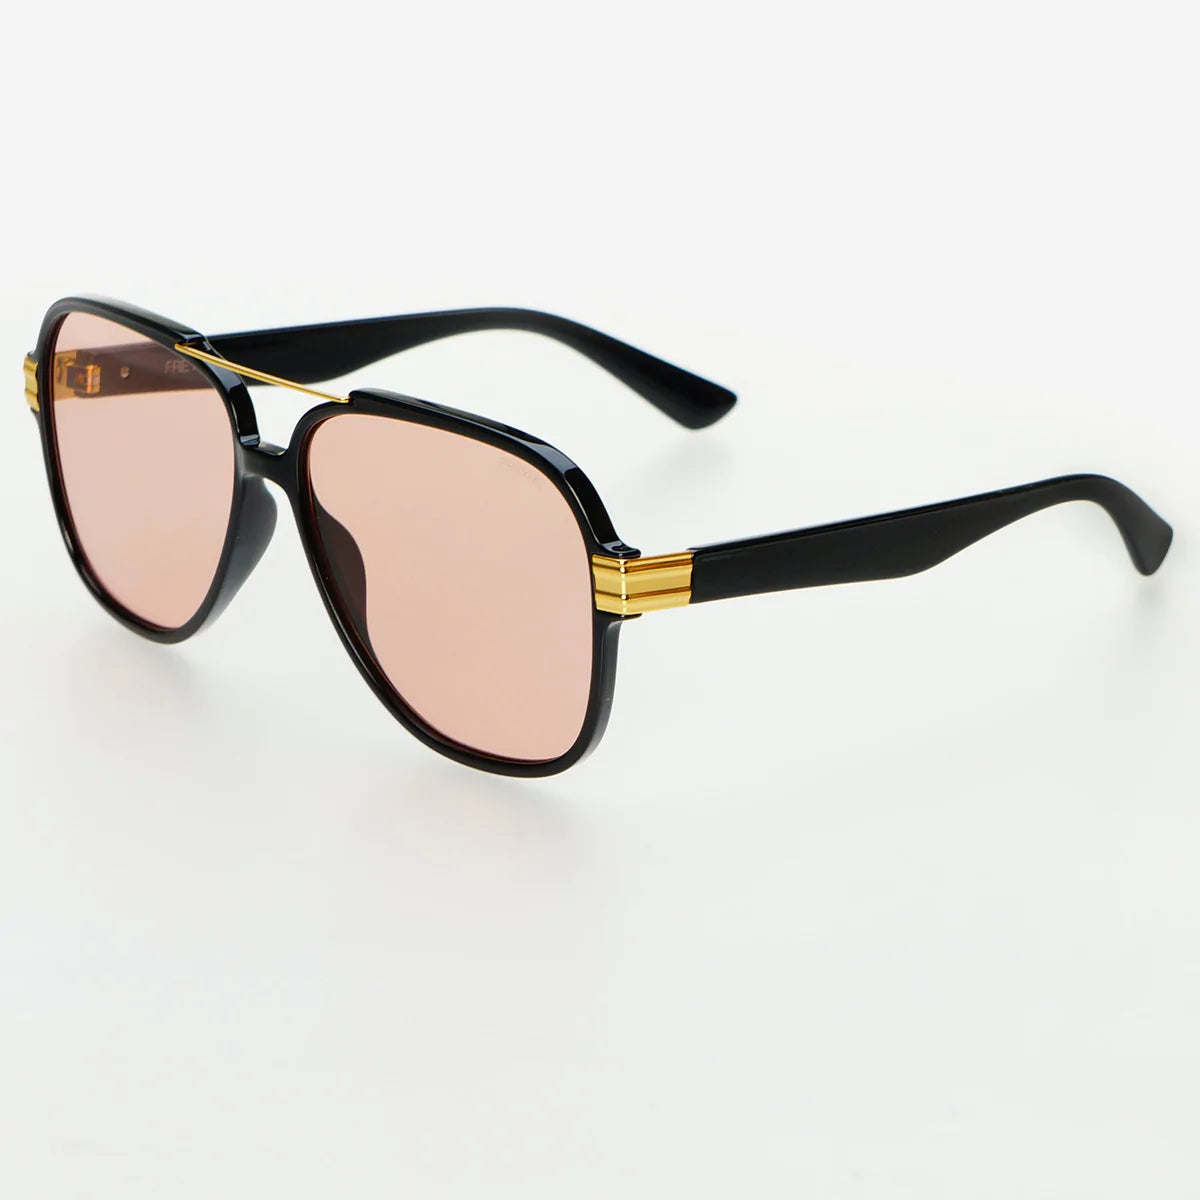 FREYRS Spencer Sunglasses